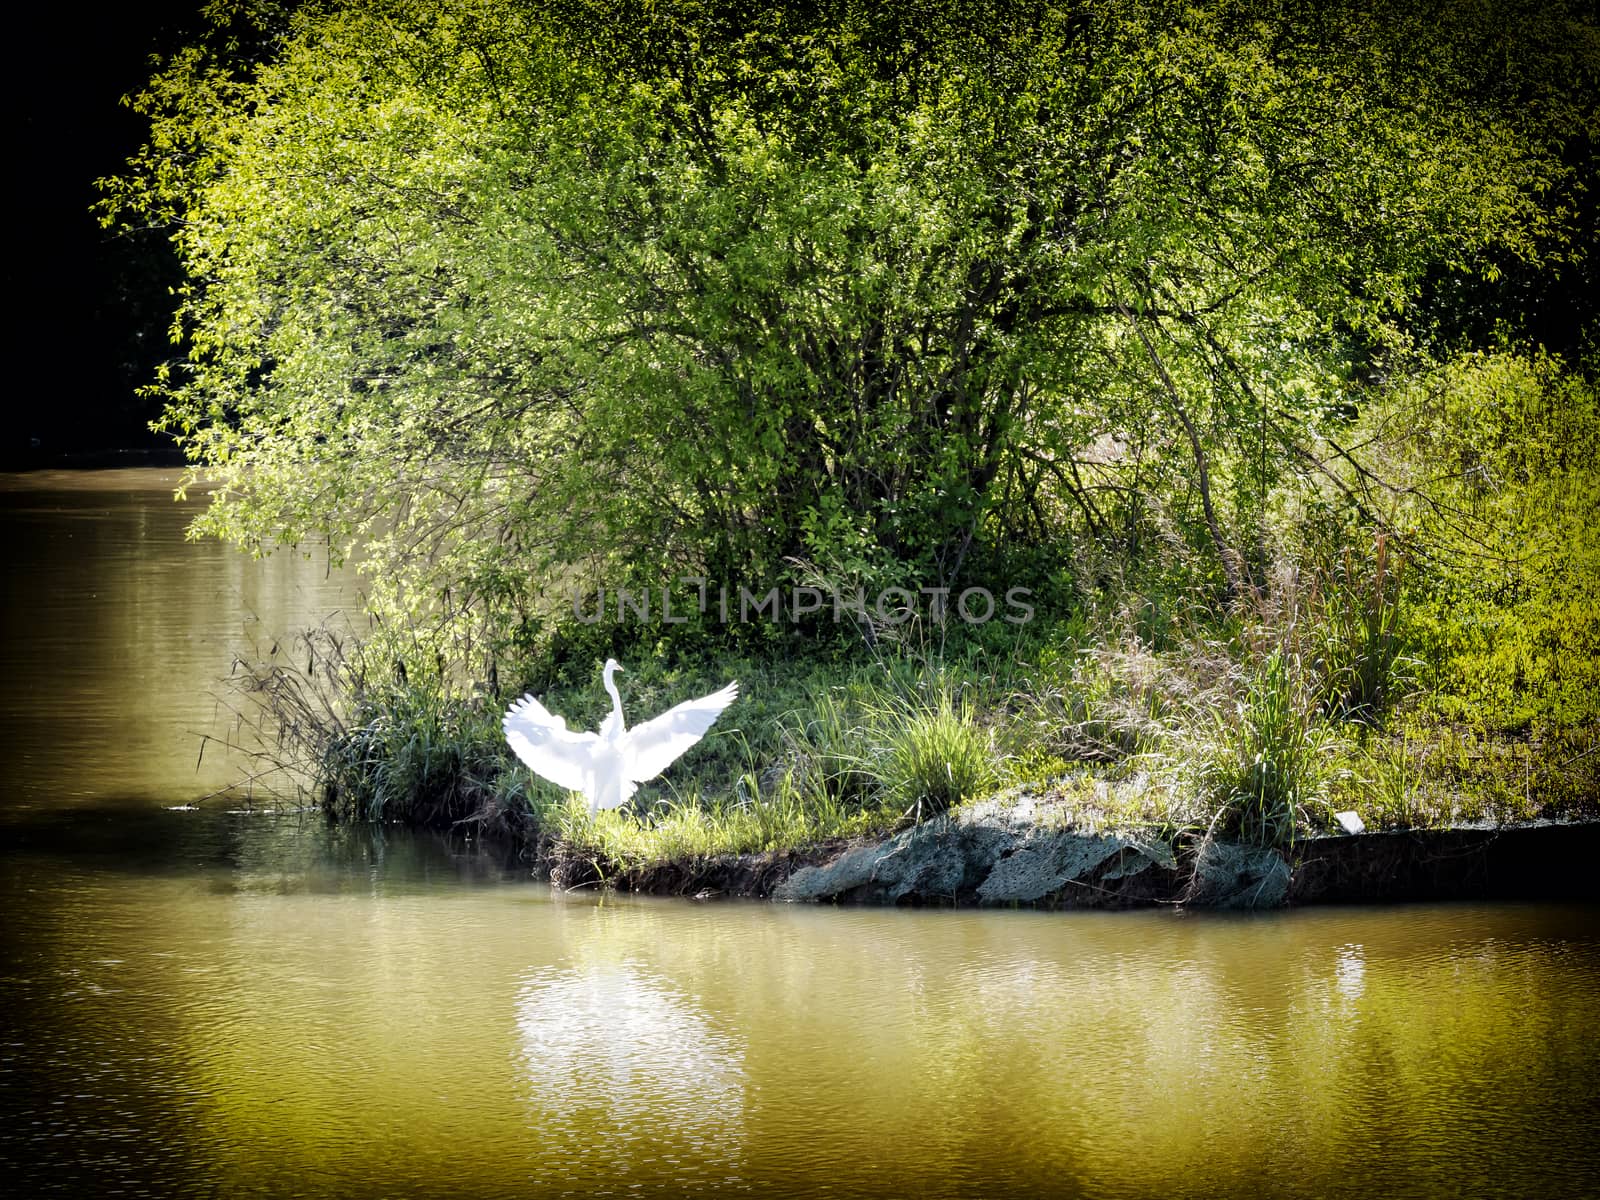 A white heron near a river bank